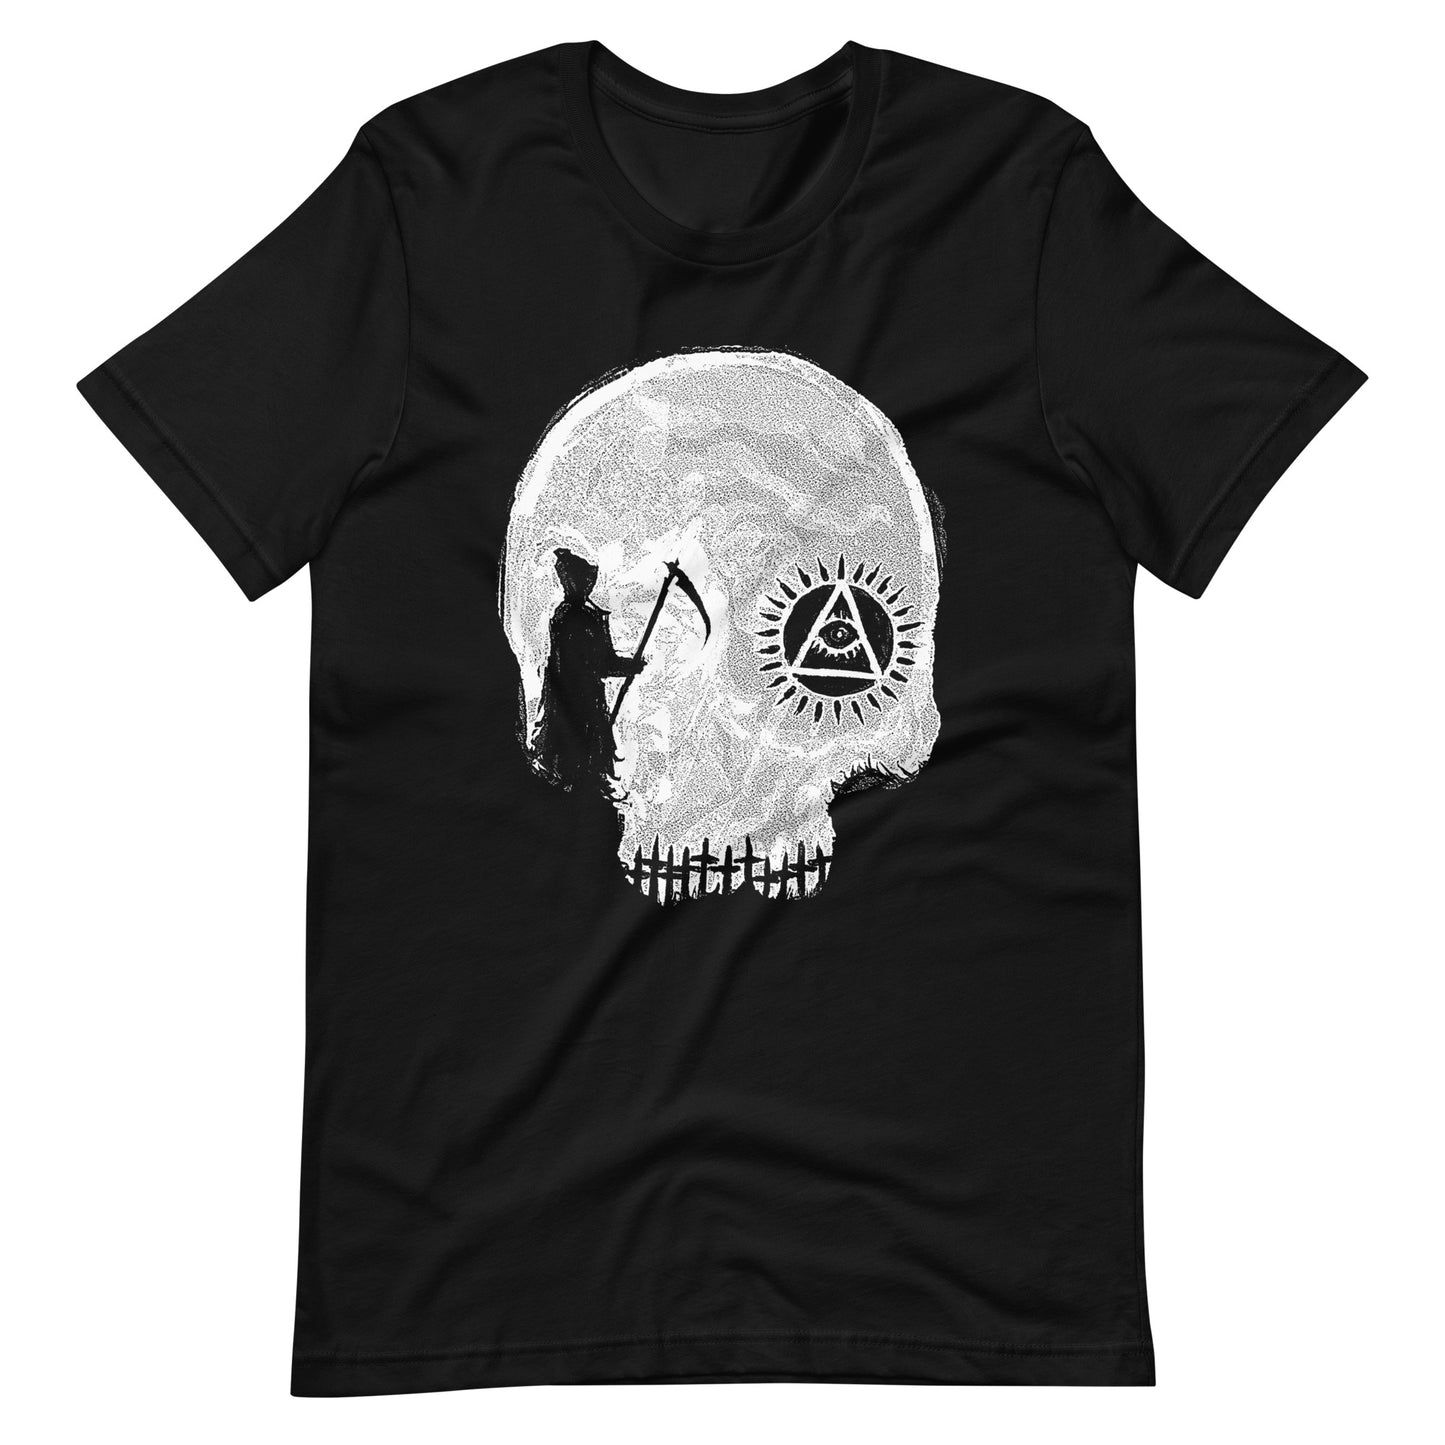 Death Row - Men's t-shirt - Black Front